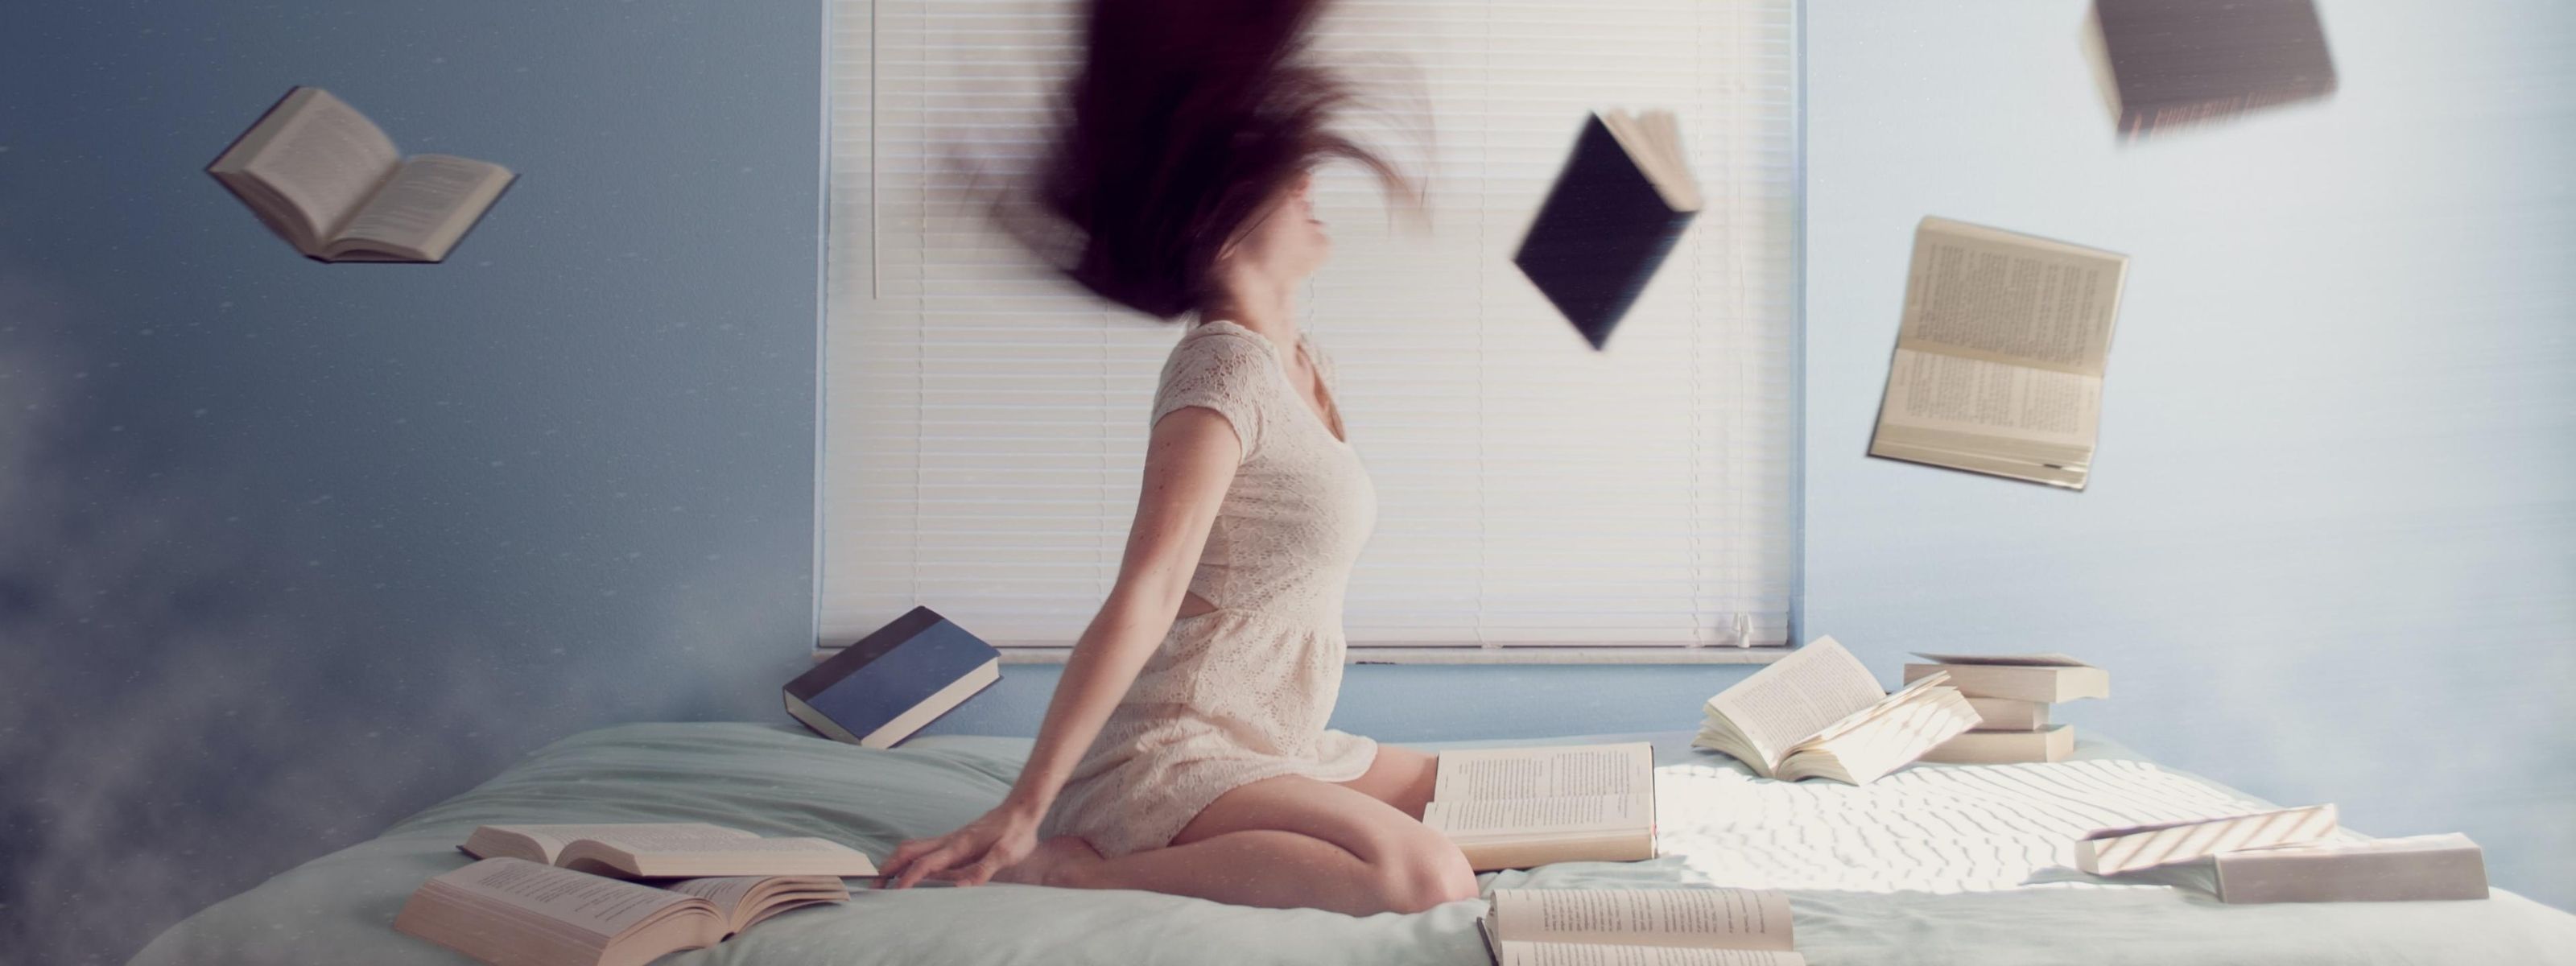 Dziewczyna siedzi na łóżku, a wokół niej unoszą się książki.